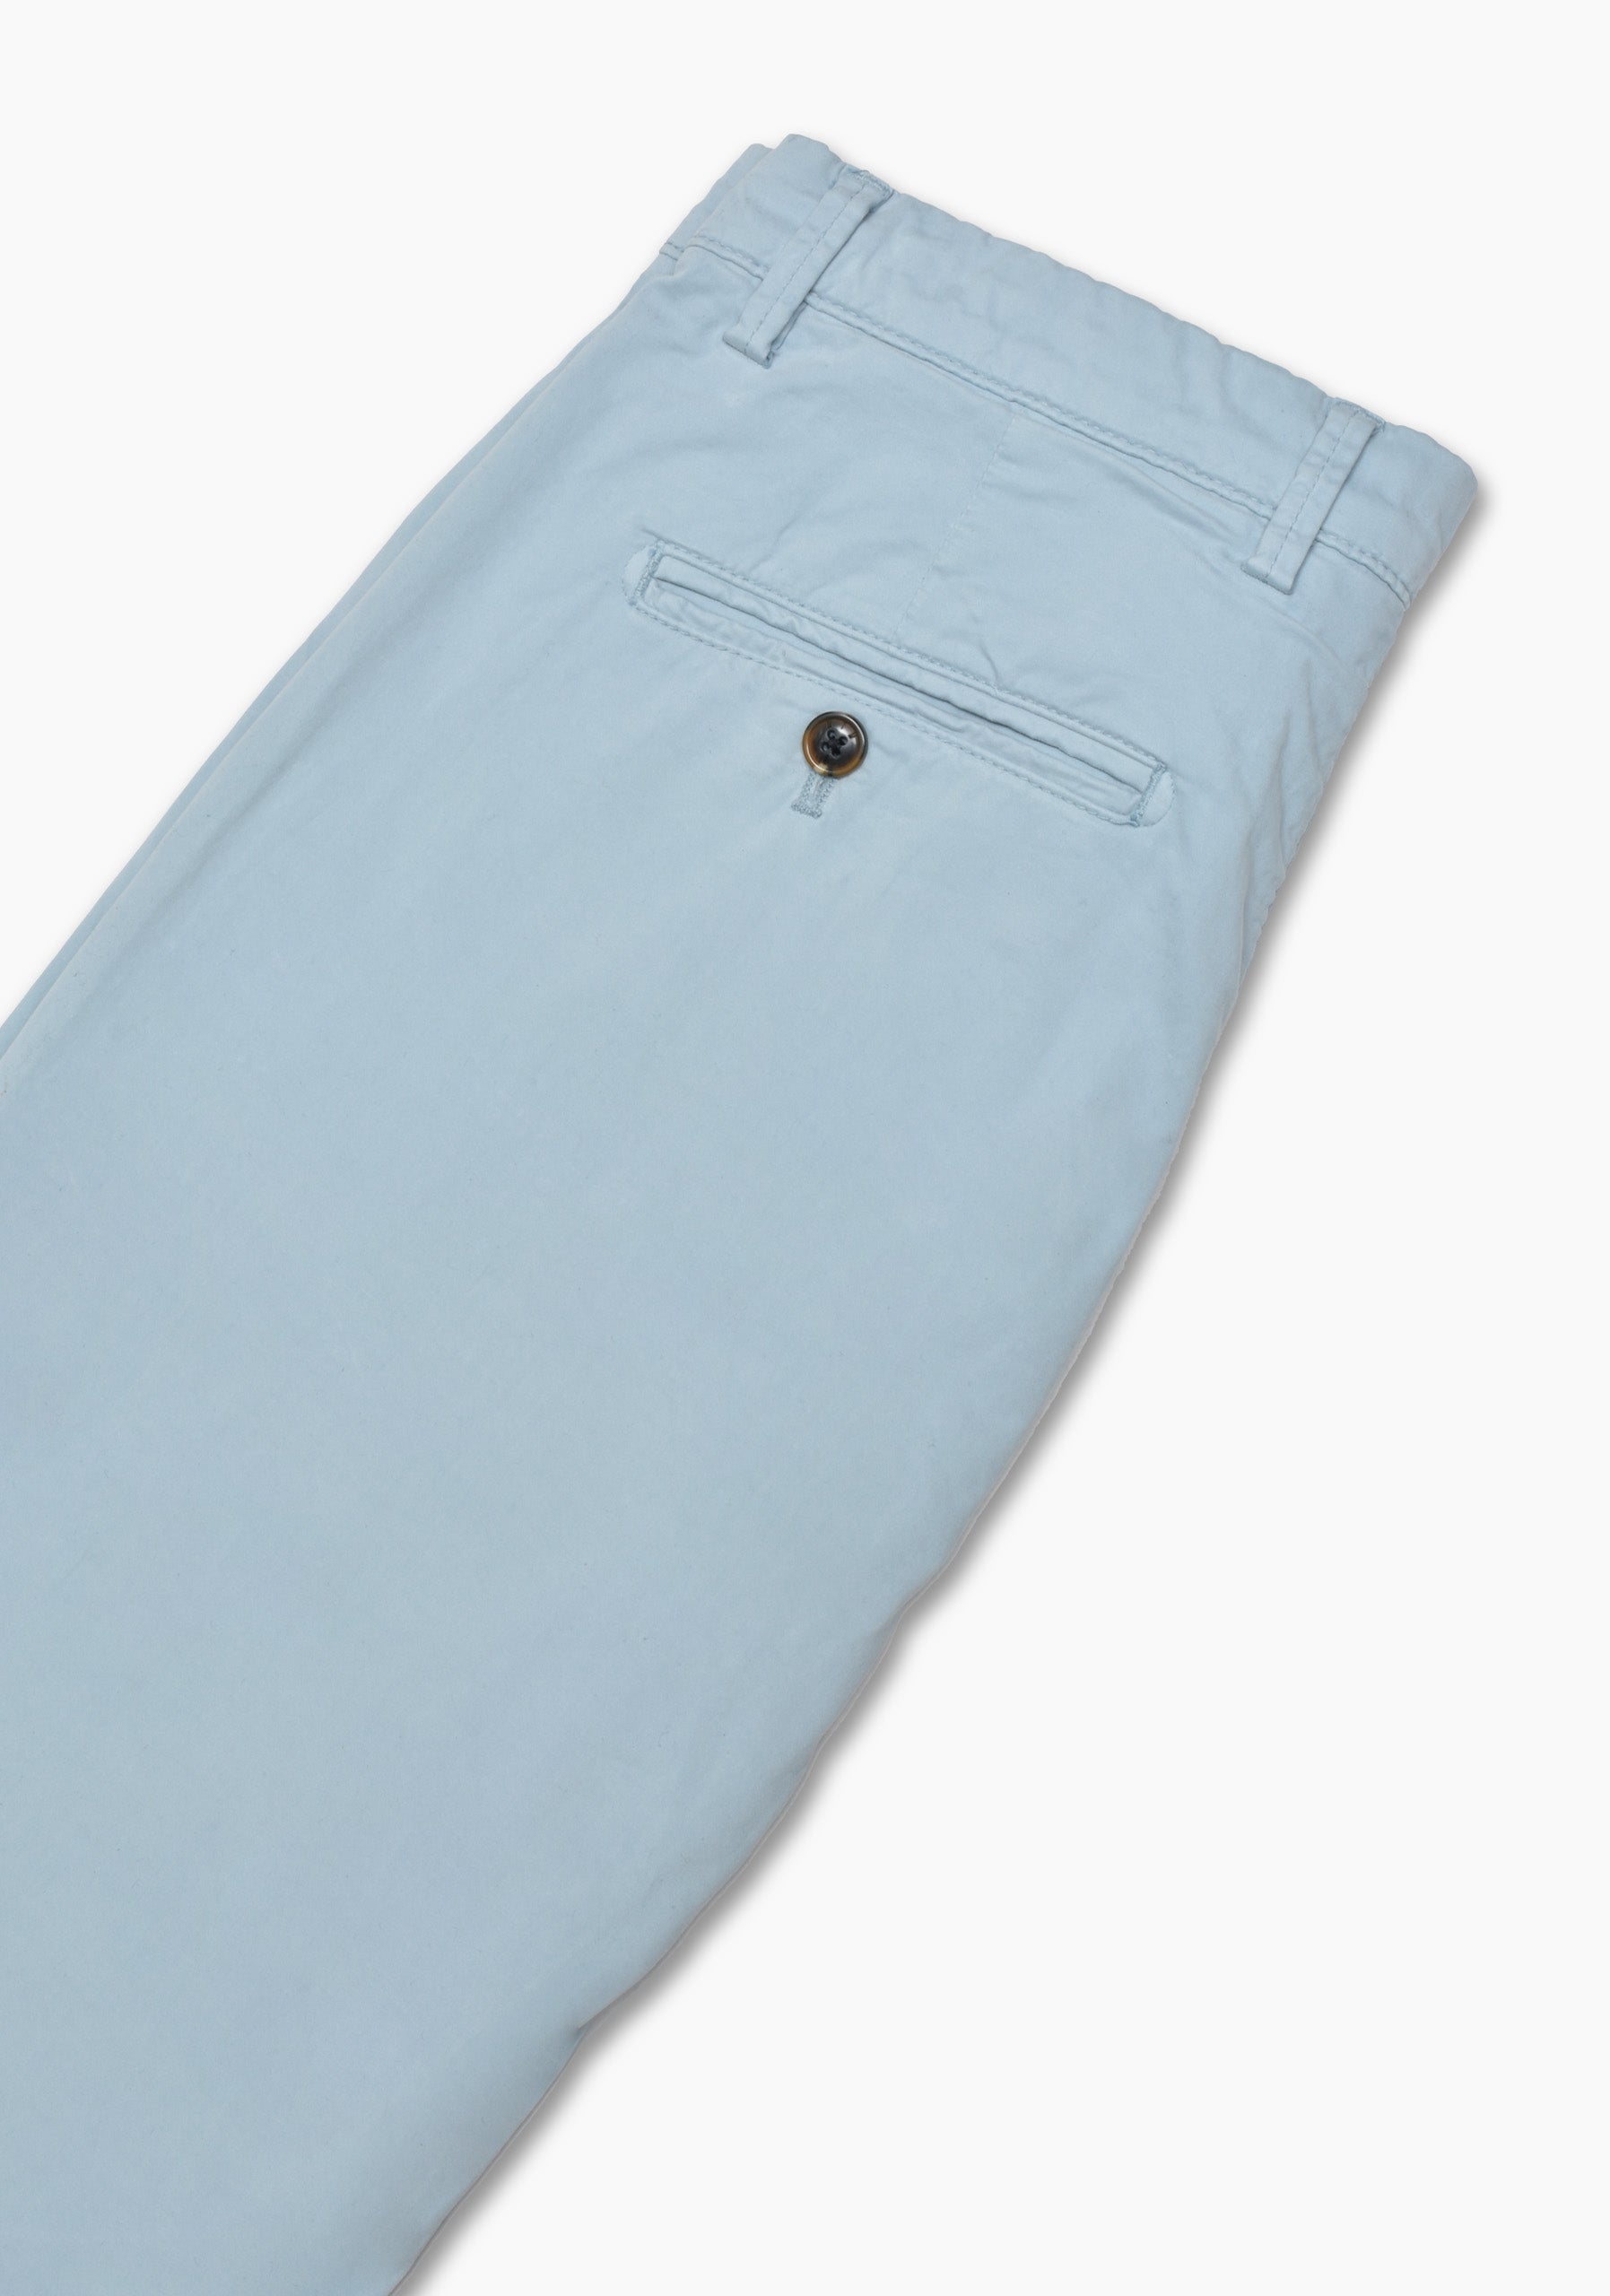 Pantalon Chino Gris Azulado